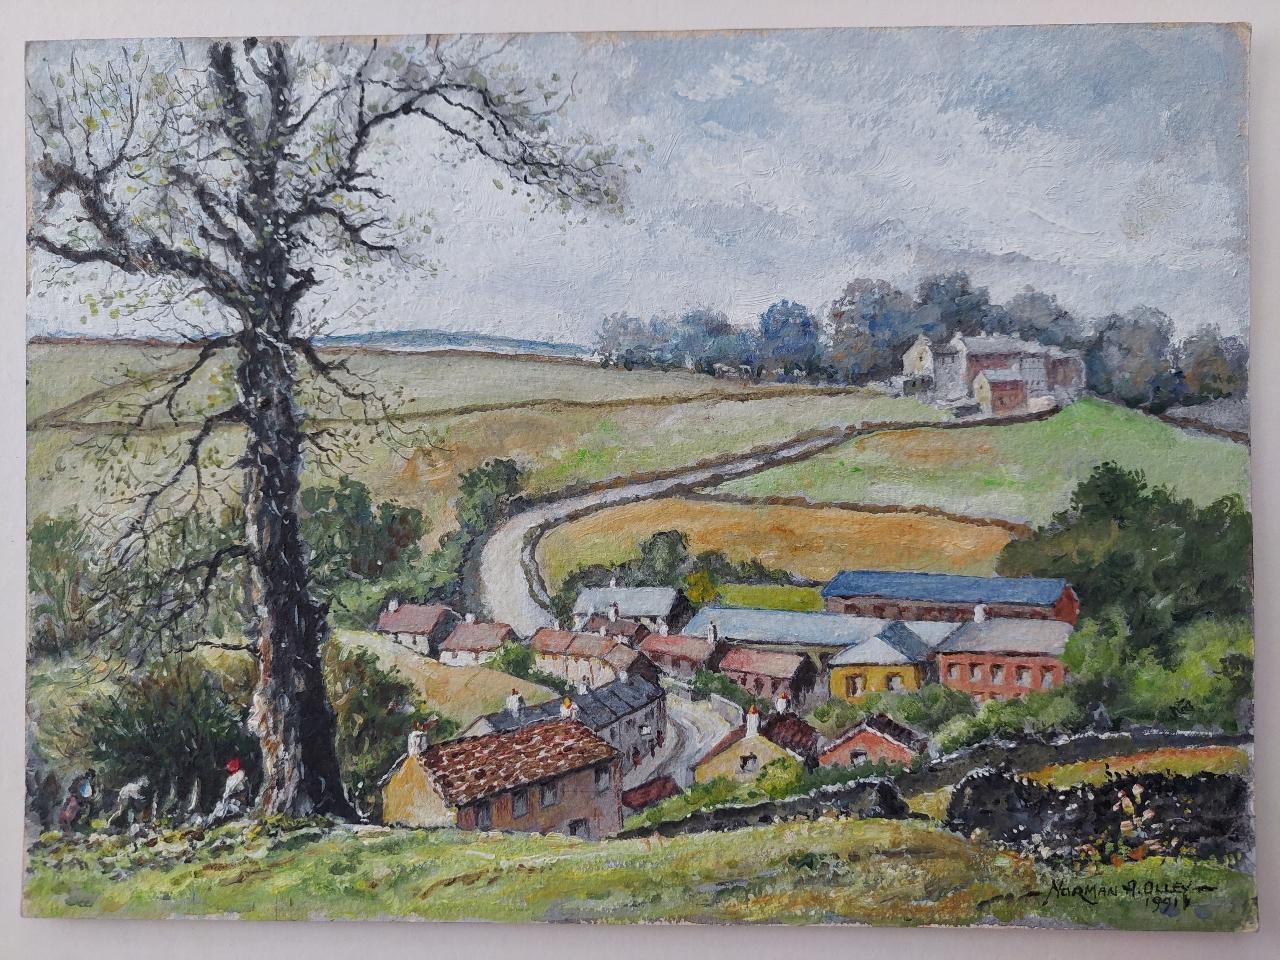 Artisten/Schule: Norman A. Olley ( Britisch, 20. Jahrhundert, 1908-1996), 1991, auf der Vorderseite signiert und verso beschriftet

Titel - Blick auf die Goose Eye Farm bei Braithwaite Yorkshire, England. Bezaubernde bäuerliche Landschaft in den